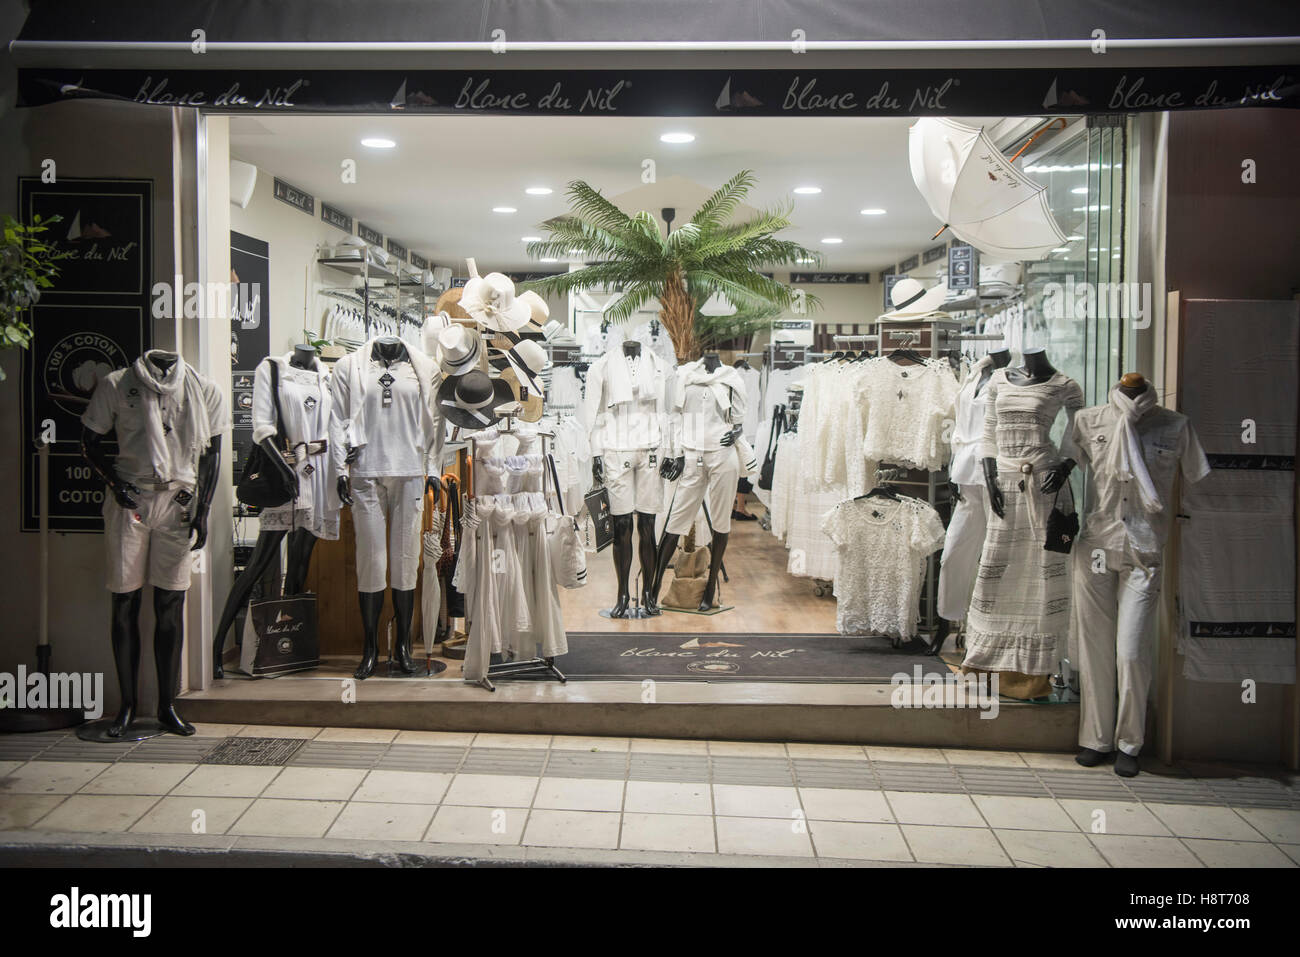 Griechenland, Kreta, Agios Nikolaos, Geschäft für weisse Kleidung, Blanc du nullo Foto Stock